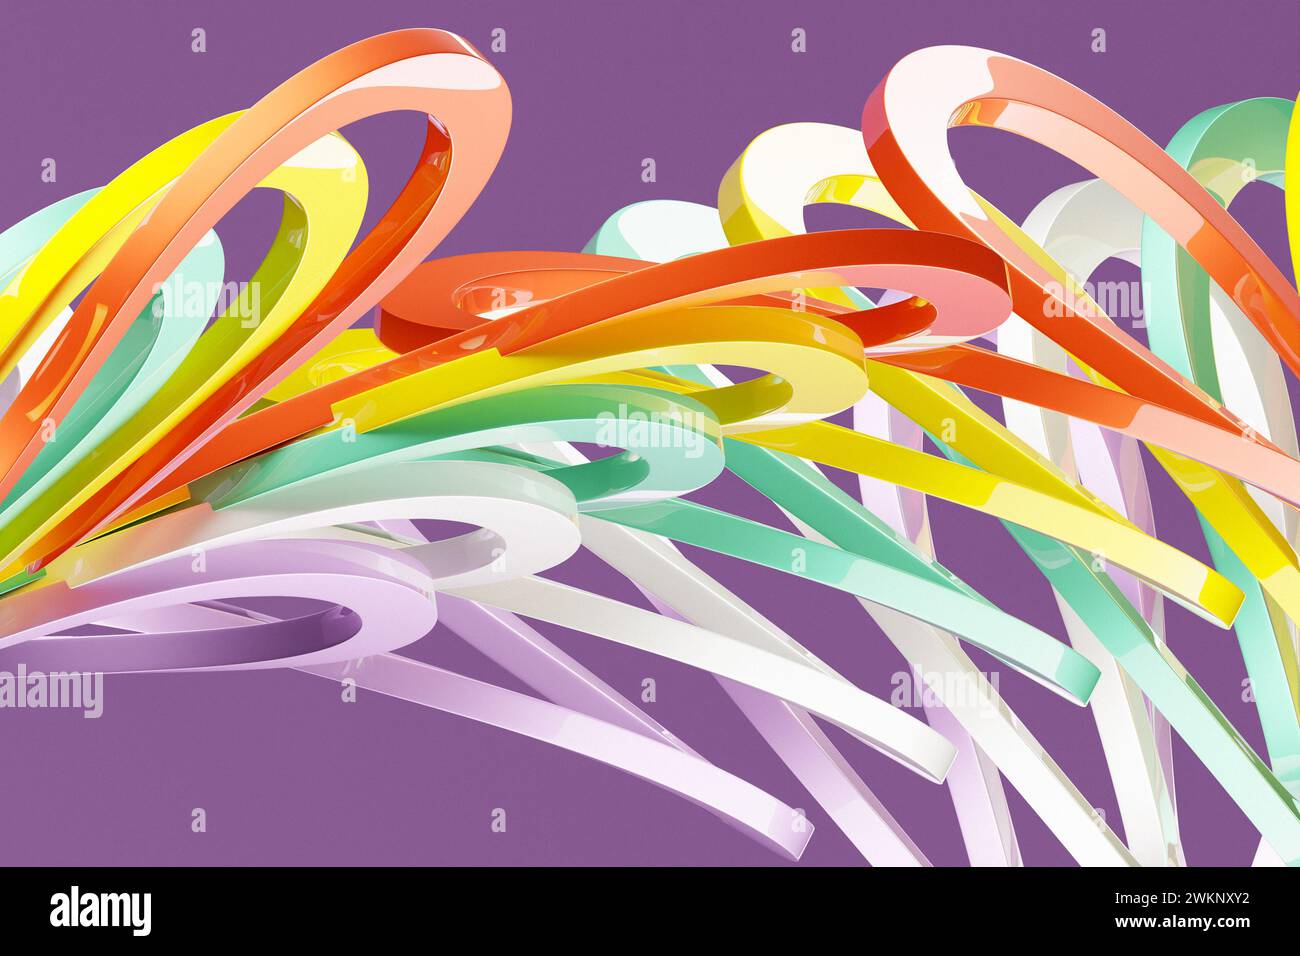 ilustración 3d de unas rayas coloridas. Rayas geométricas similares a las ondas. Patrón de líneas de cruce brillante abstracto Foto de stock